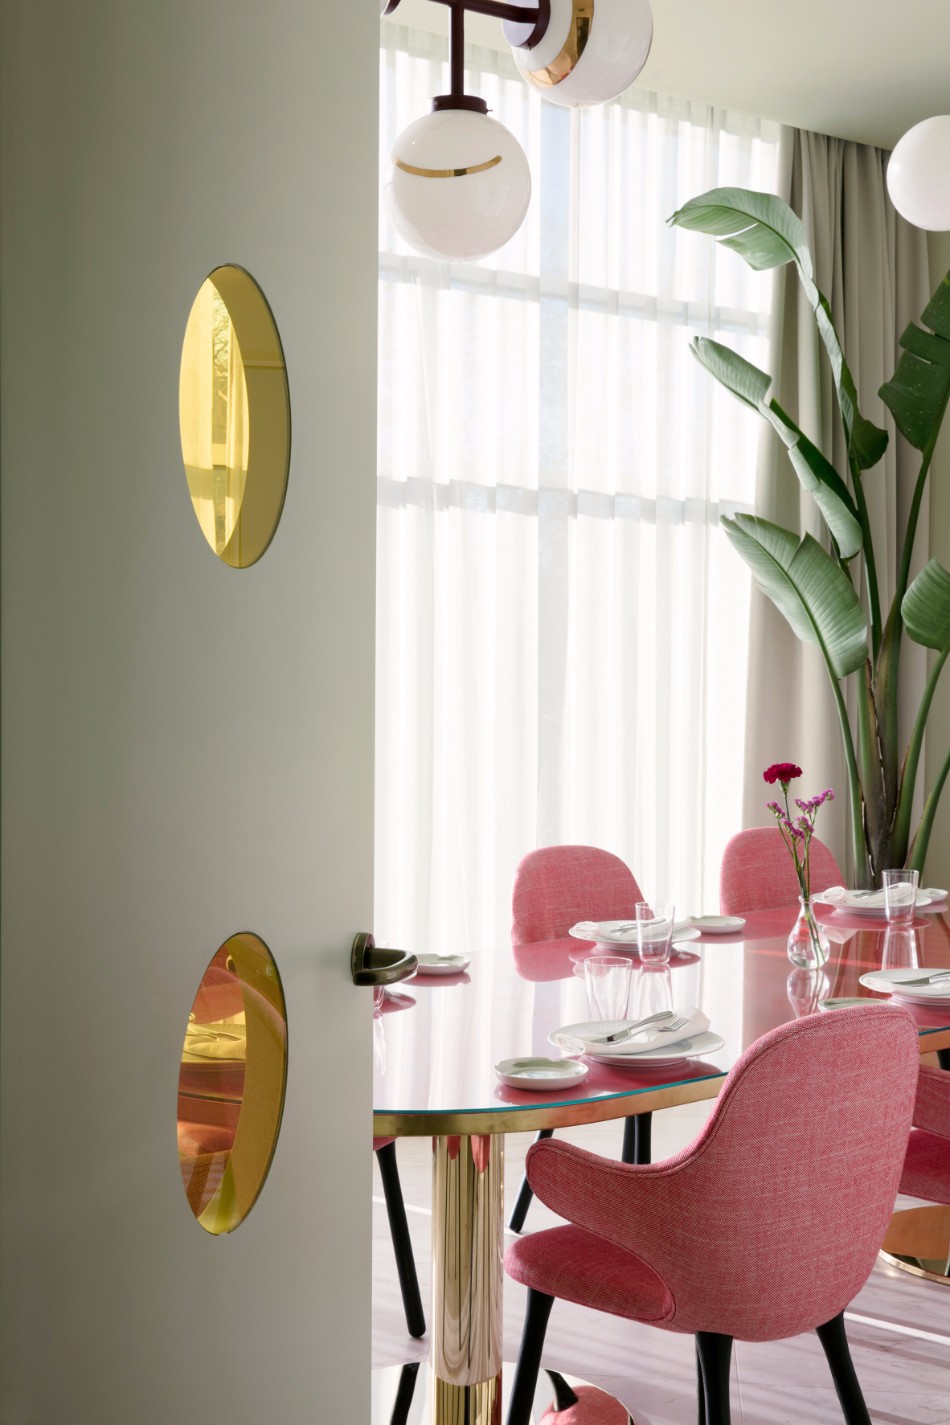 The Best Dining Areas by Jaime Hayon | www.bocadolobo.com #moderndiningtables #diningroom #diningarea #thediningroom #topinteriordesigners #bestinteriordesigners #interiordesign #luxurybrands @moderndiningtables